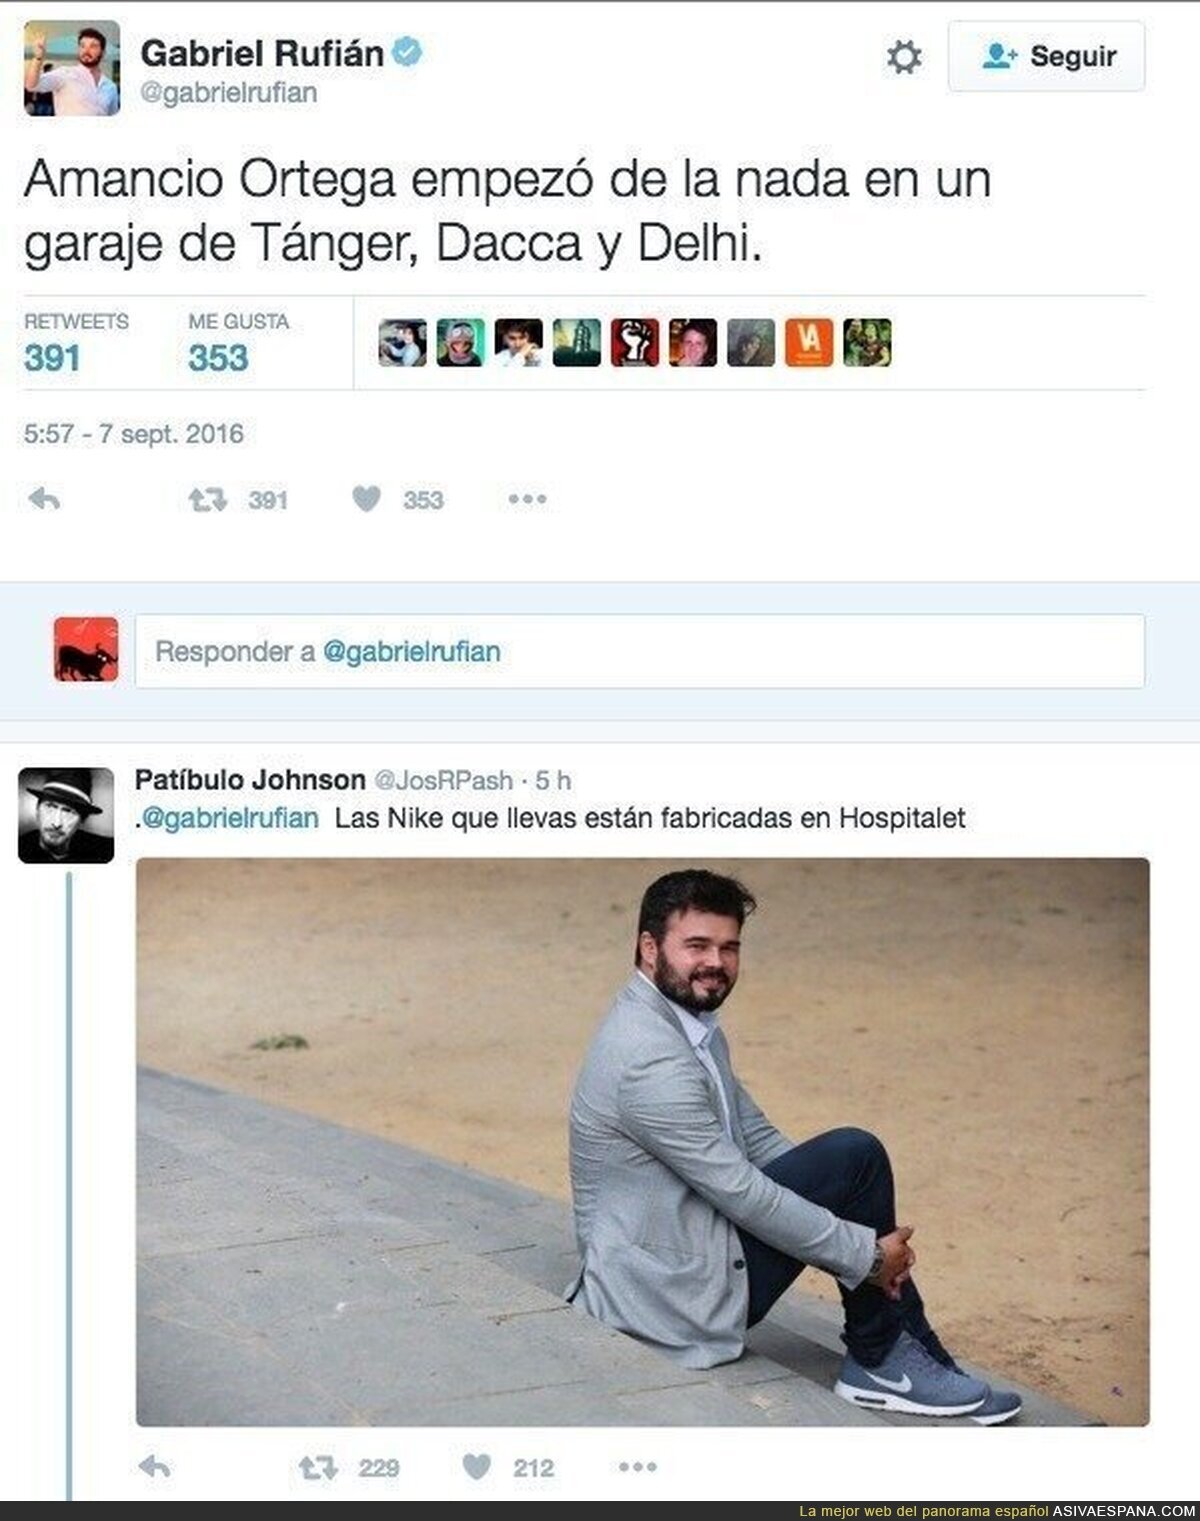 El monumental ‘zasca’ de un tuitero a Gabriel Rufián a cuenta de Amancio Ortega